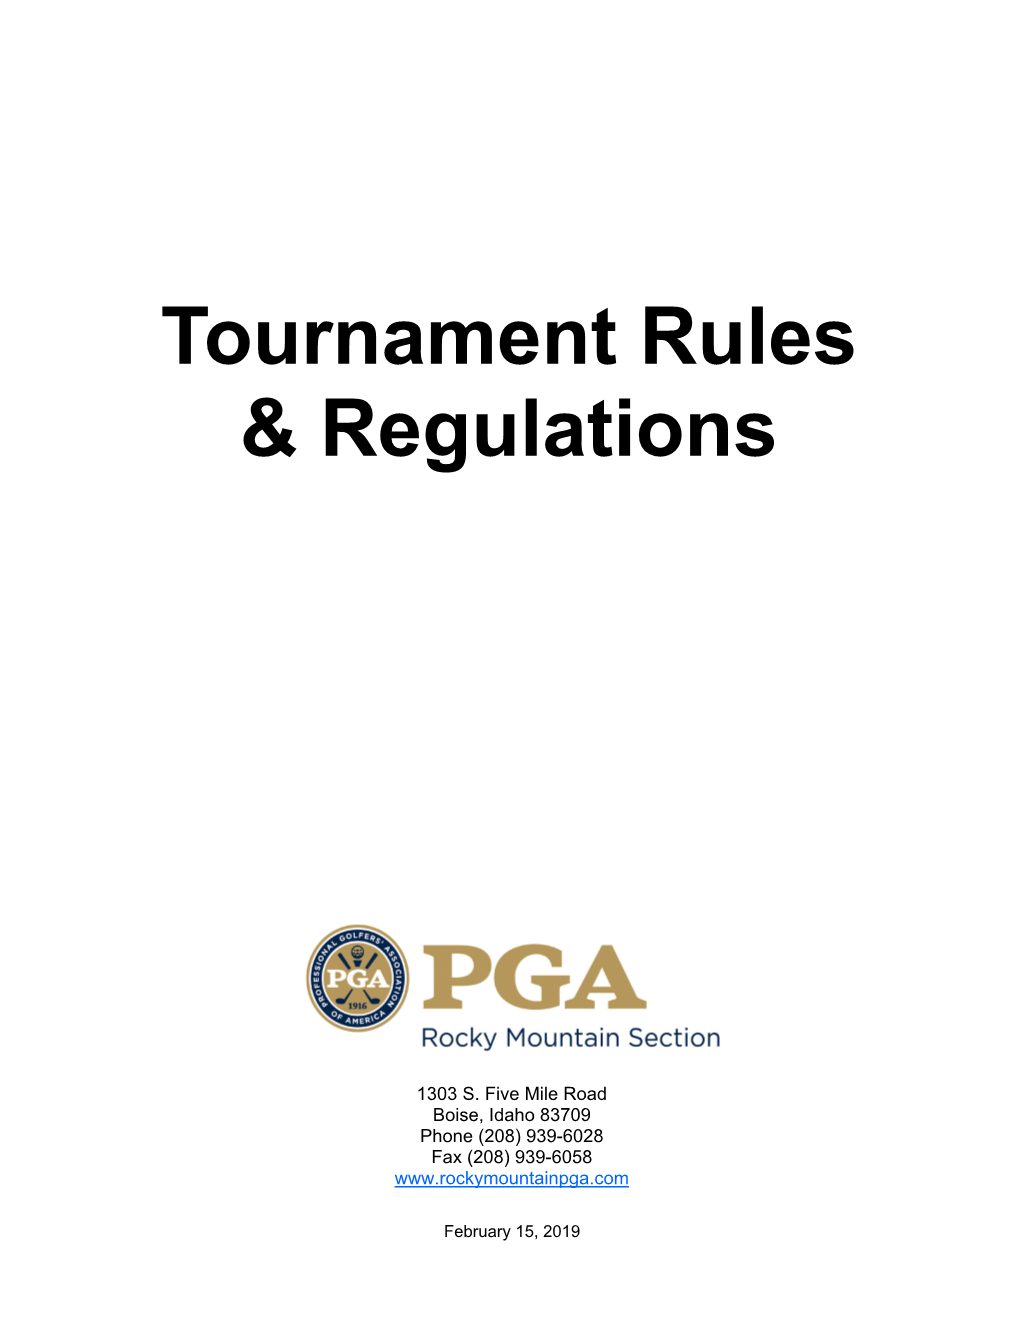 Tournament Rules & Regs 2-15-19.Pub